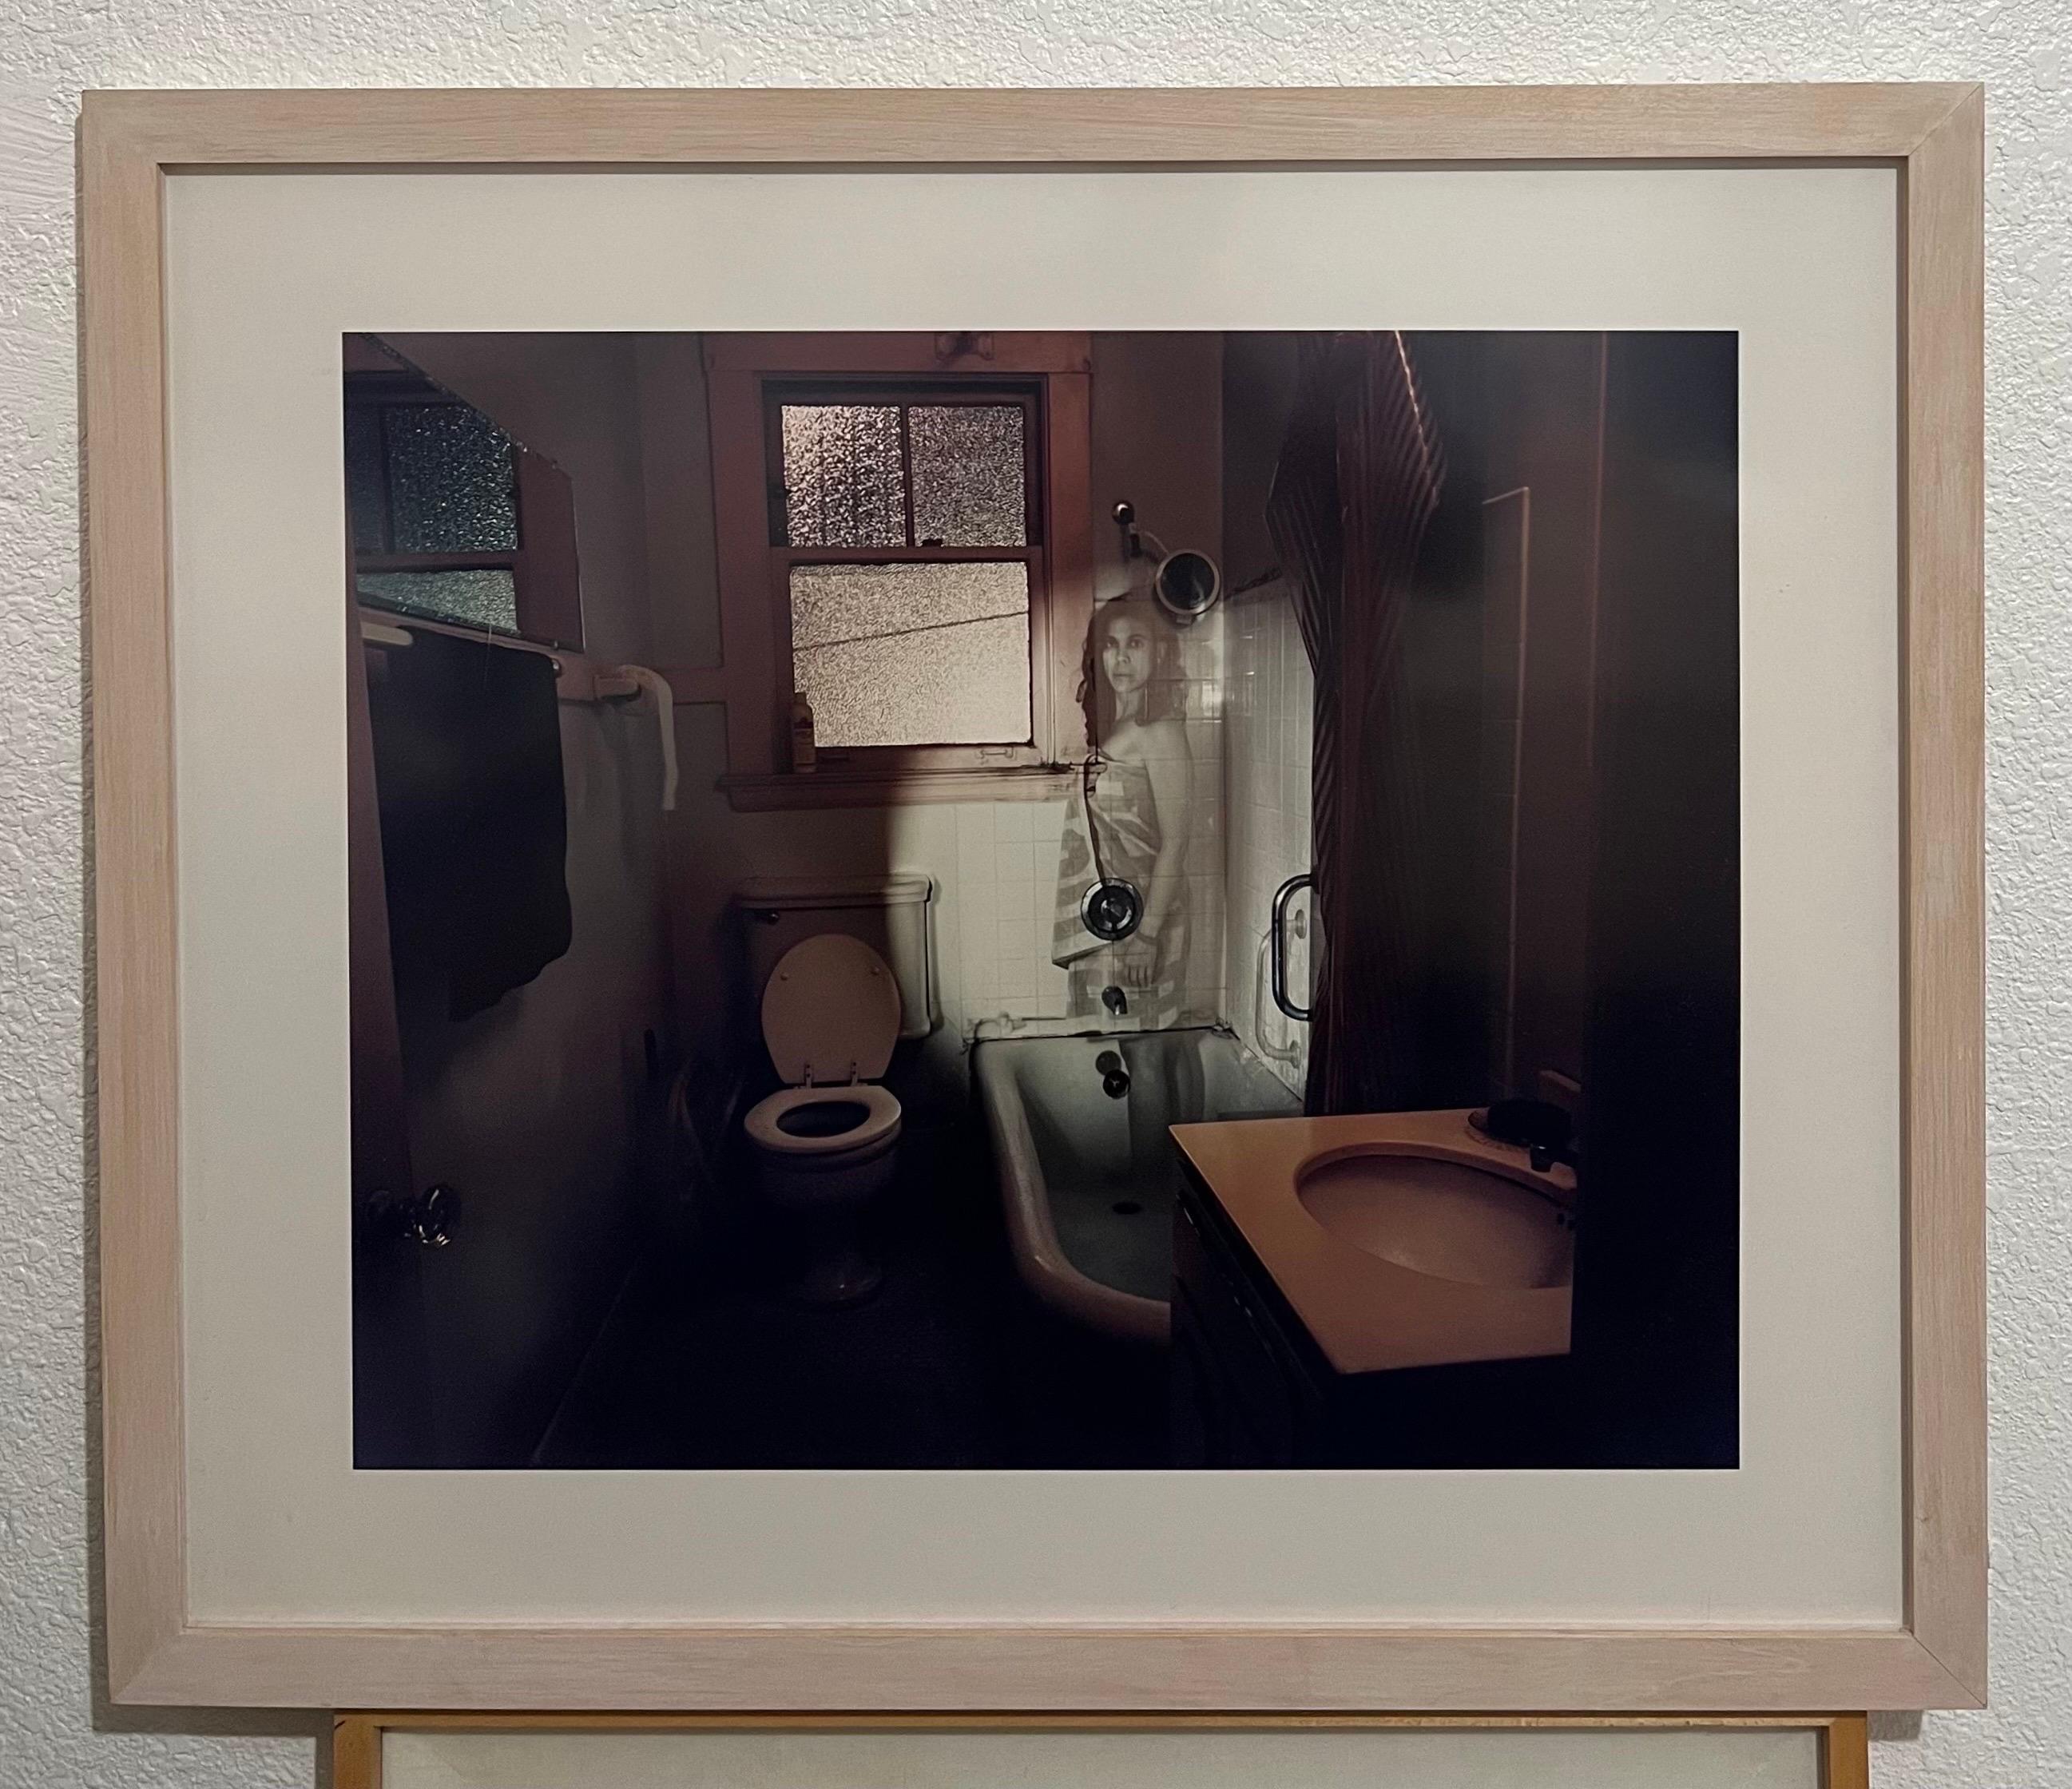 Shimon Attie (Amerikaner, geb. 1957), Untitled Memory (Projektion von Marsha A.)
Ektacolor-Fotografie, 1998, aus der Serie Untitled Memory, 
Verso ein Label der Galerie,  Jack Shainman Gallery, New York  mattiert und gerahmt. 
Rahmenmaße 27 3/4 x 32